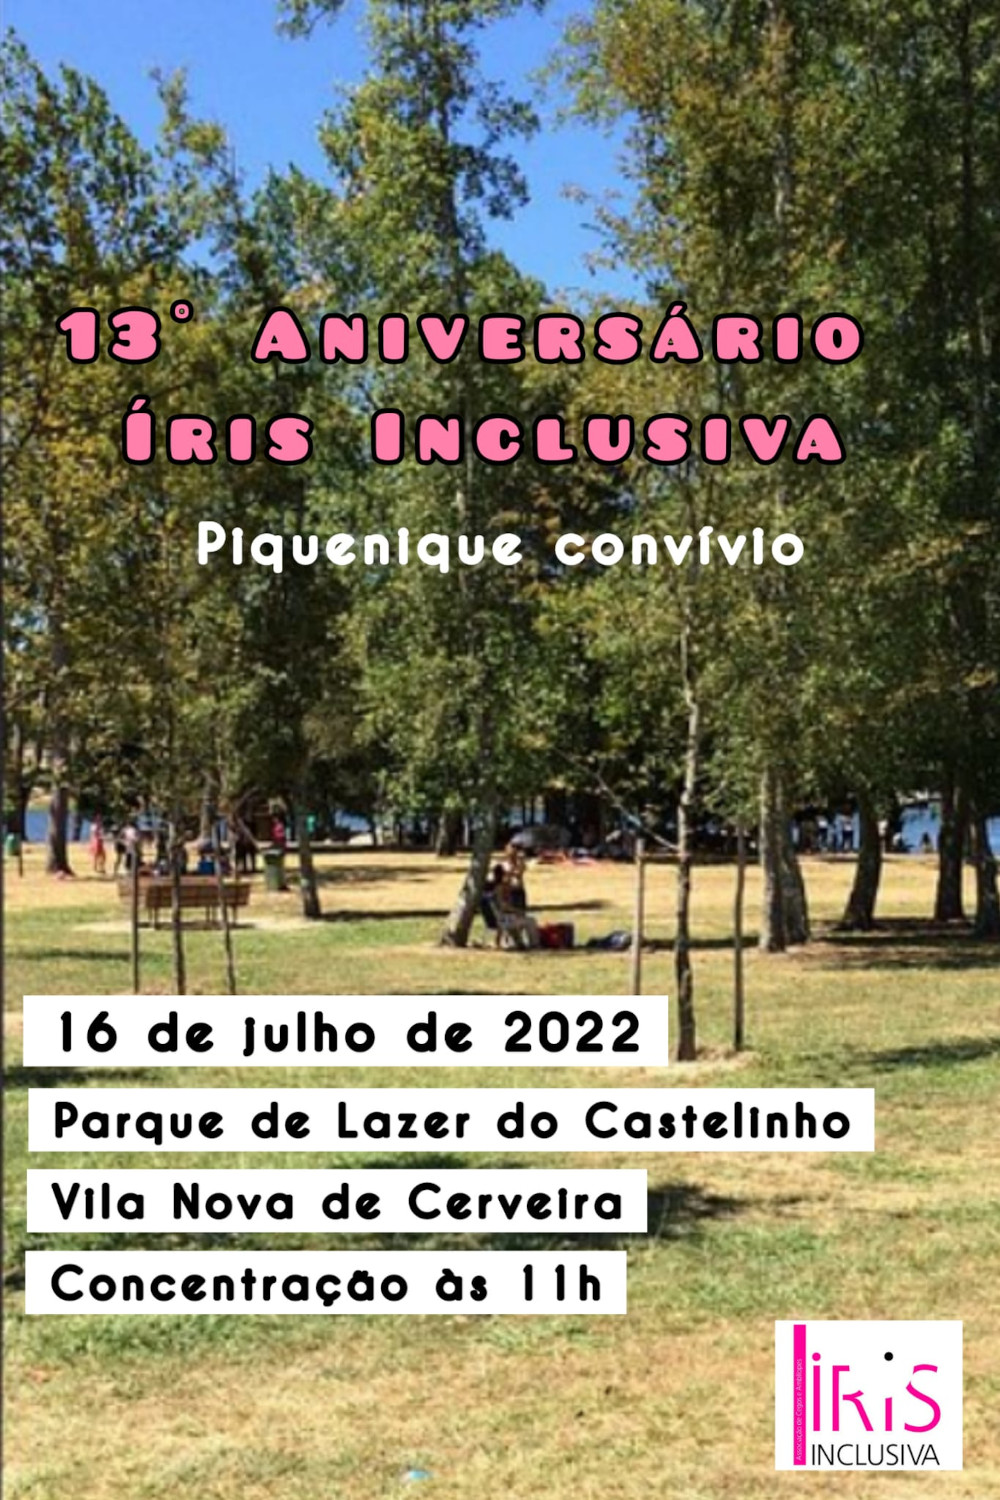 Cartaz da iniciativa, contendo toda a informação relativa ao evento sobre uma foto do parque de lazer como fundo